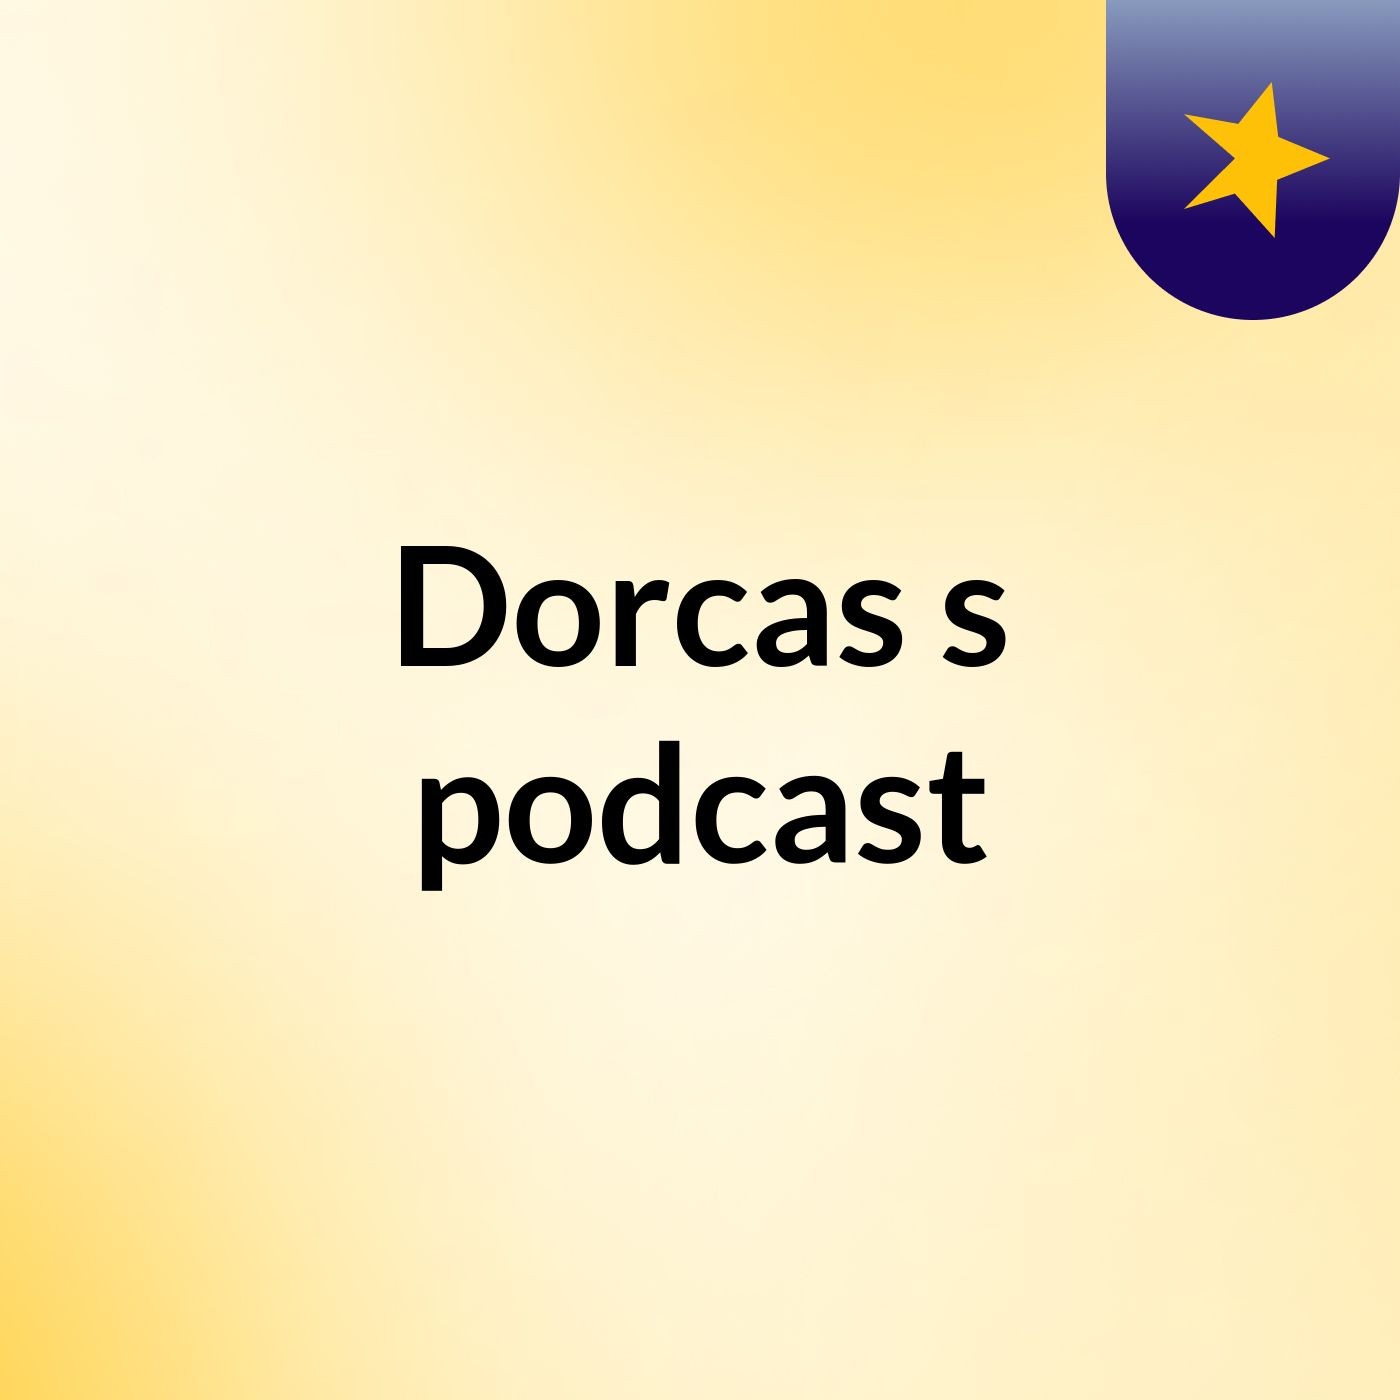 Episode 2 - Dorcas's podcast